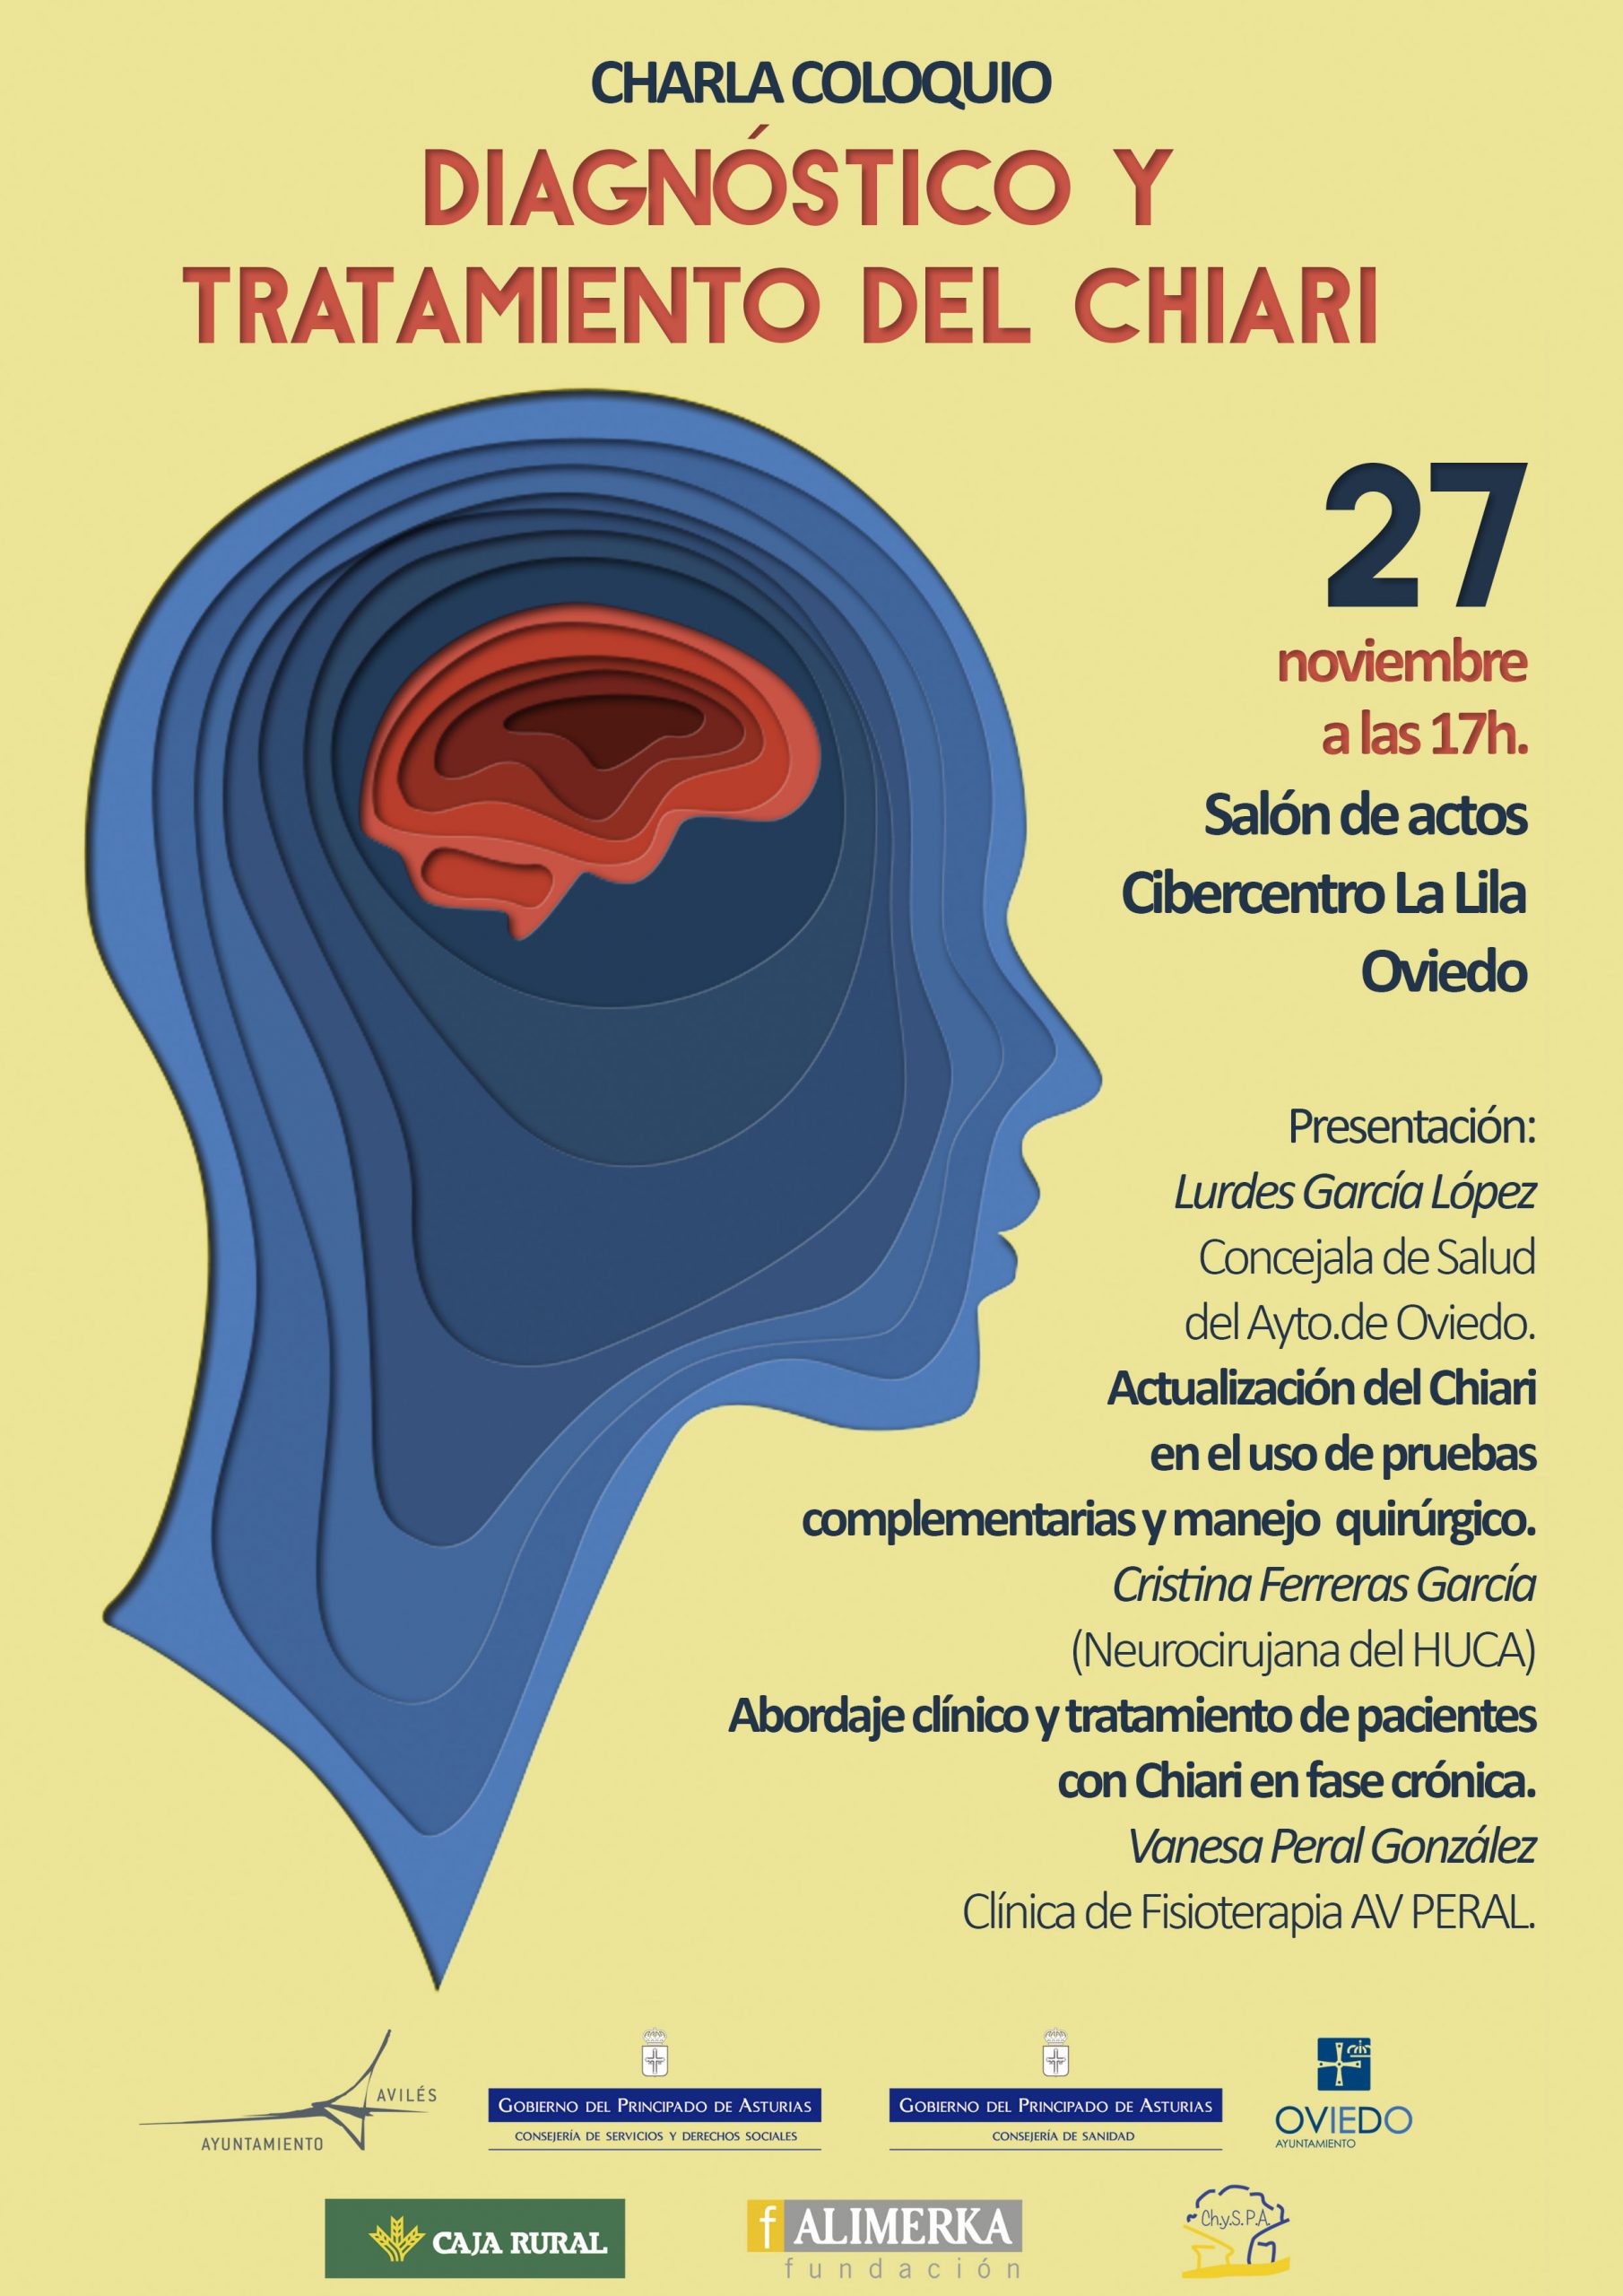 El lunes 27 de noviembre tendrá lugar la charla coloquio sobre el diagnóstico y tratamiento del Chiari, a las 17h en el salón de actos del Cibercentro La Lila, Oviedo. No te la pierdas